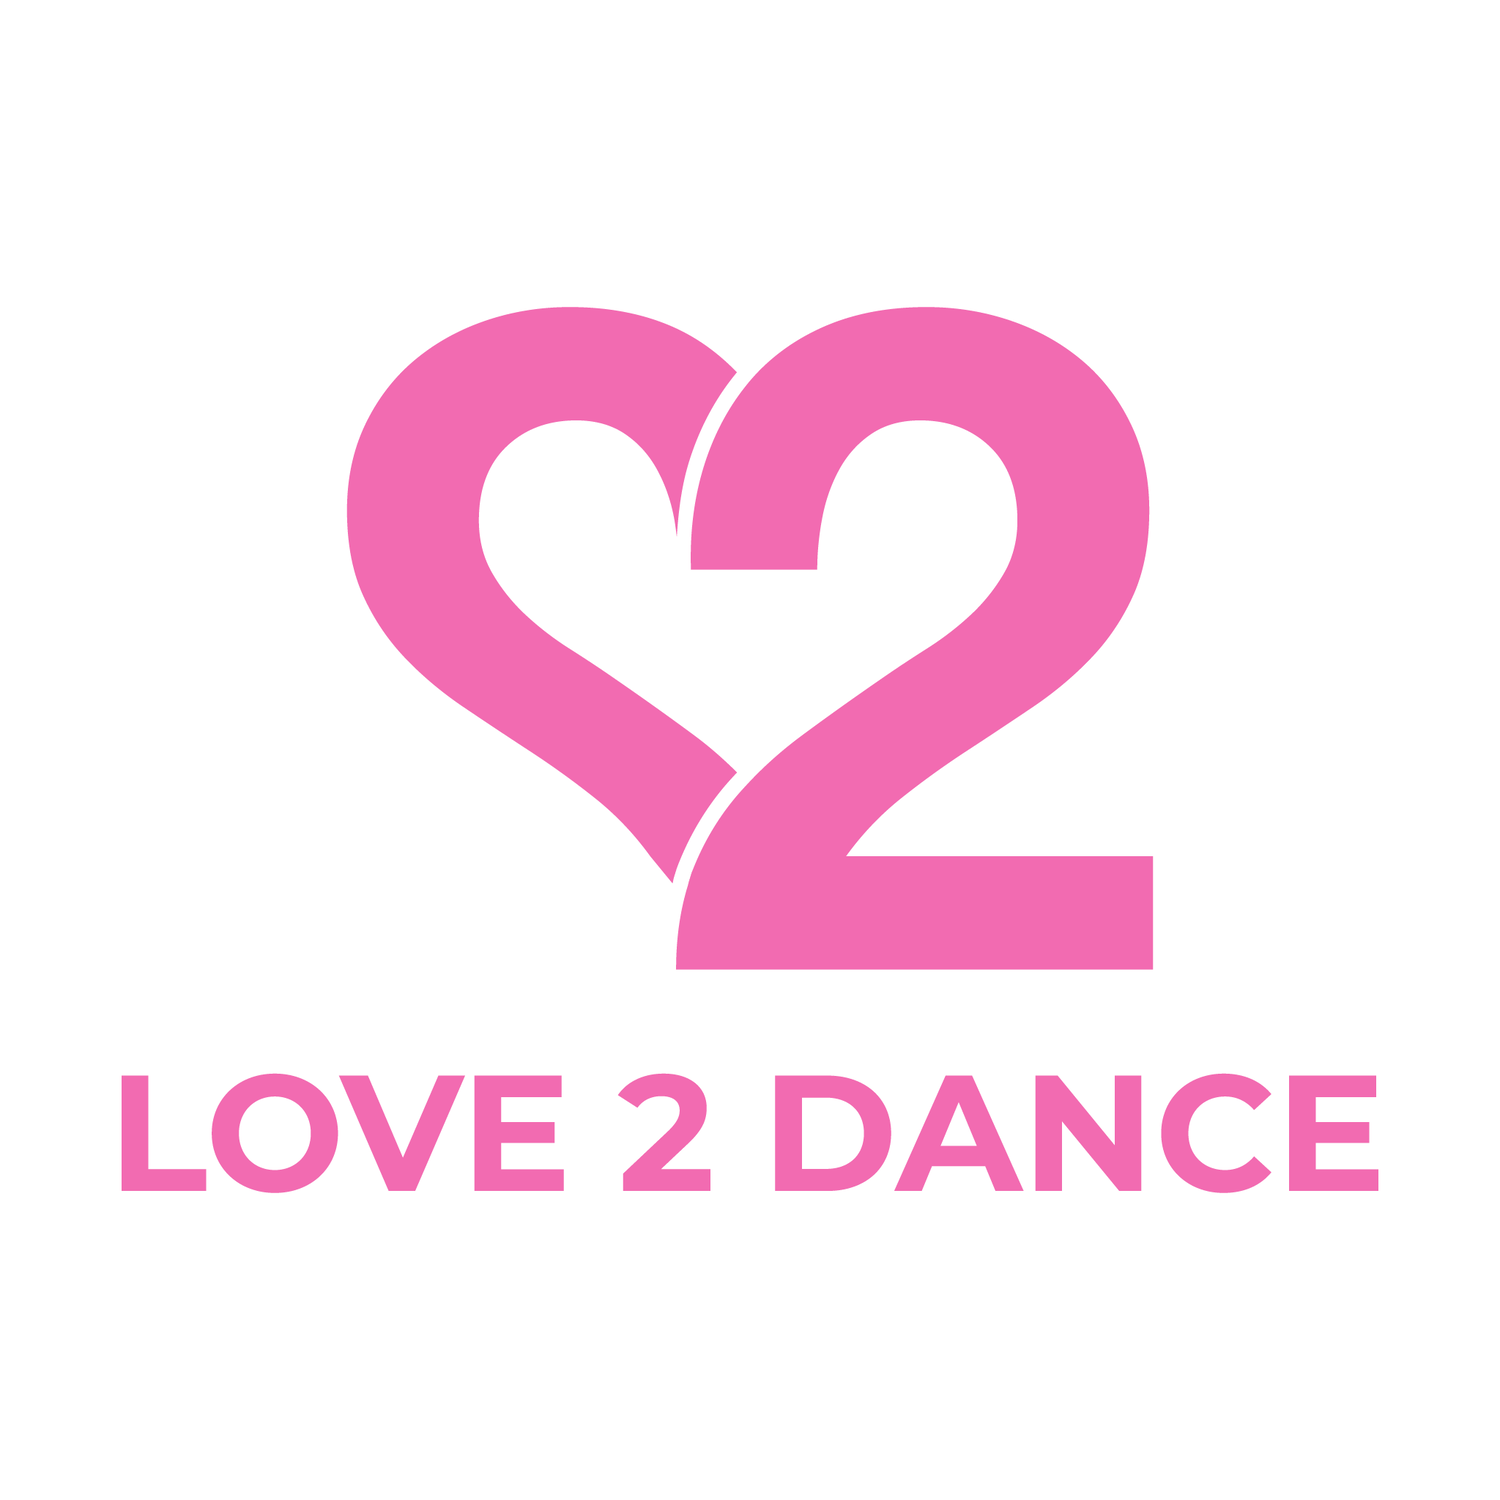 LOVE 2 DANCE